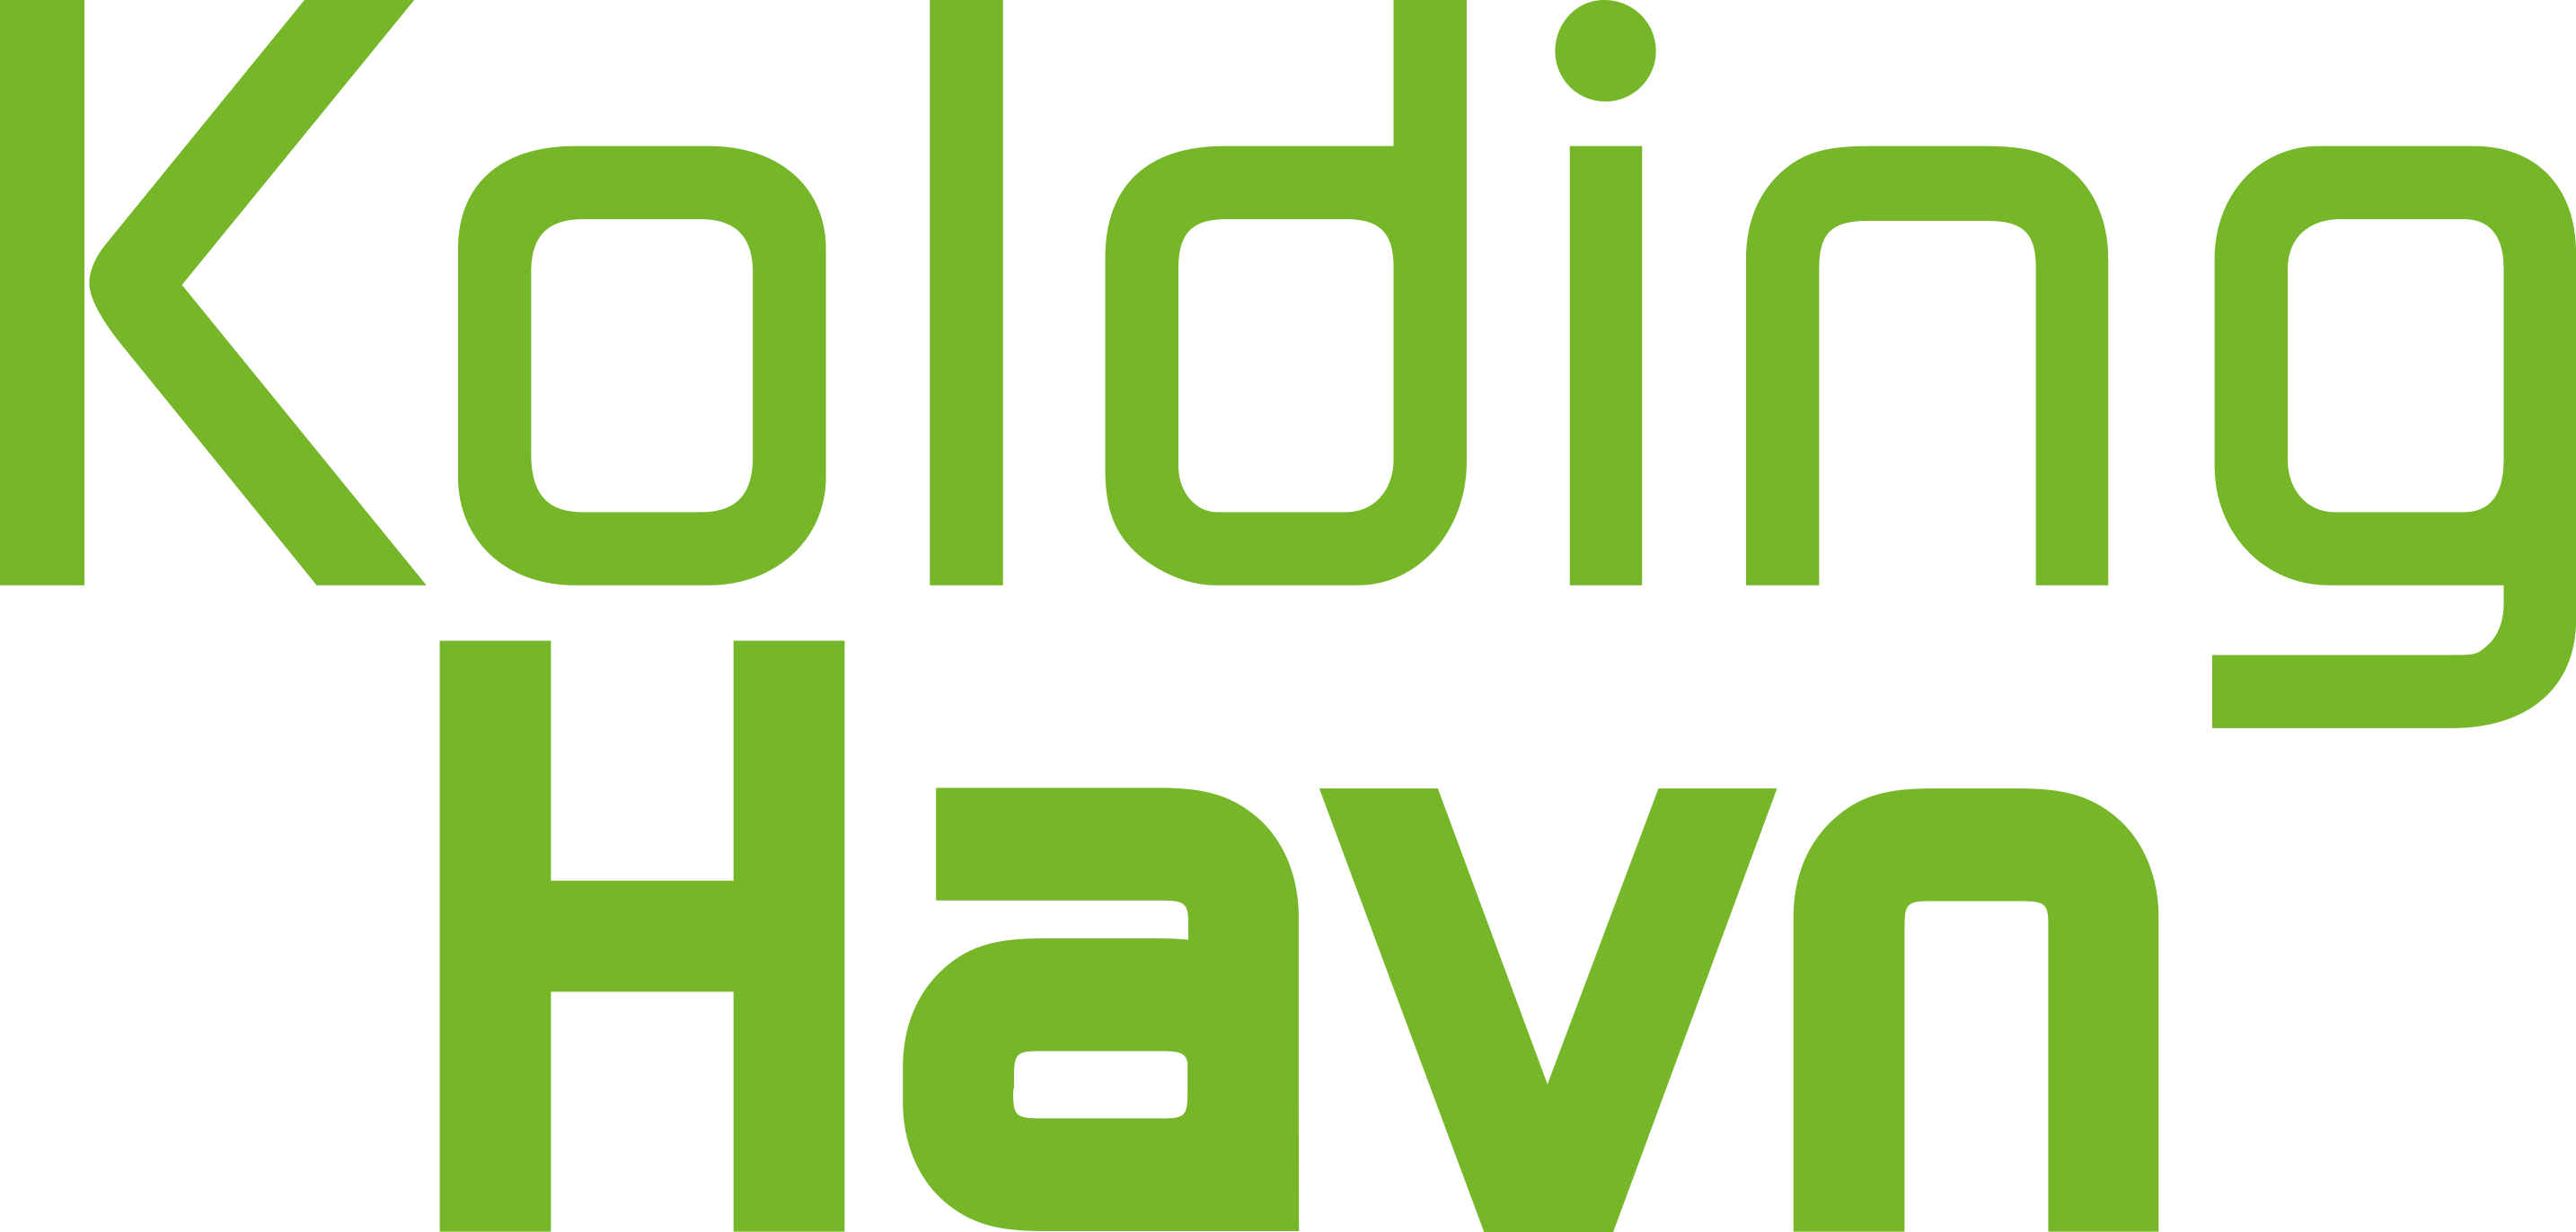 Kolding havn logo